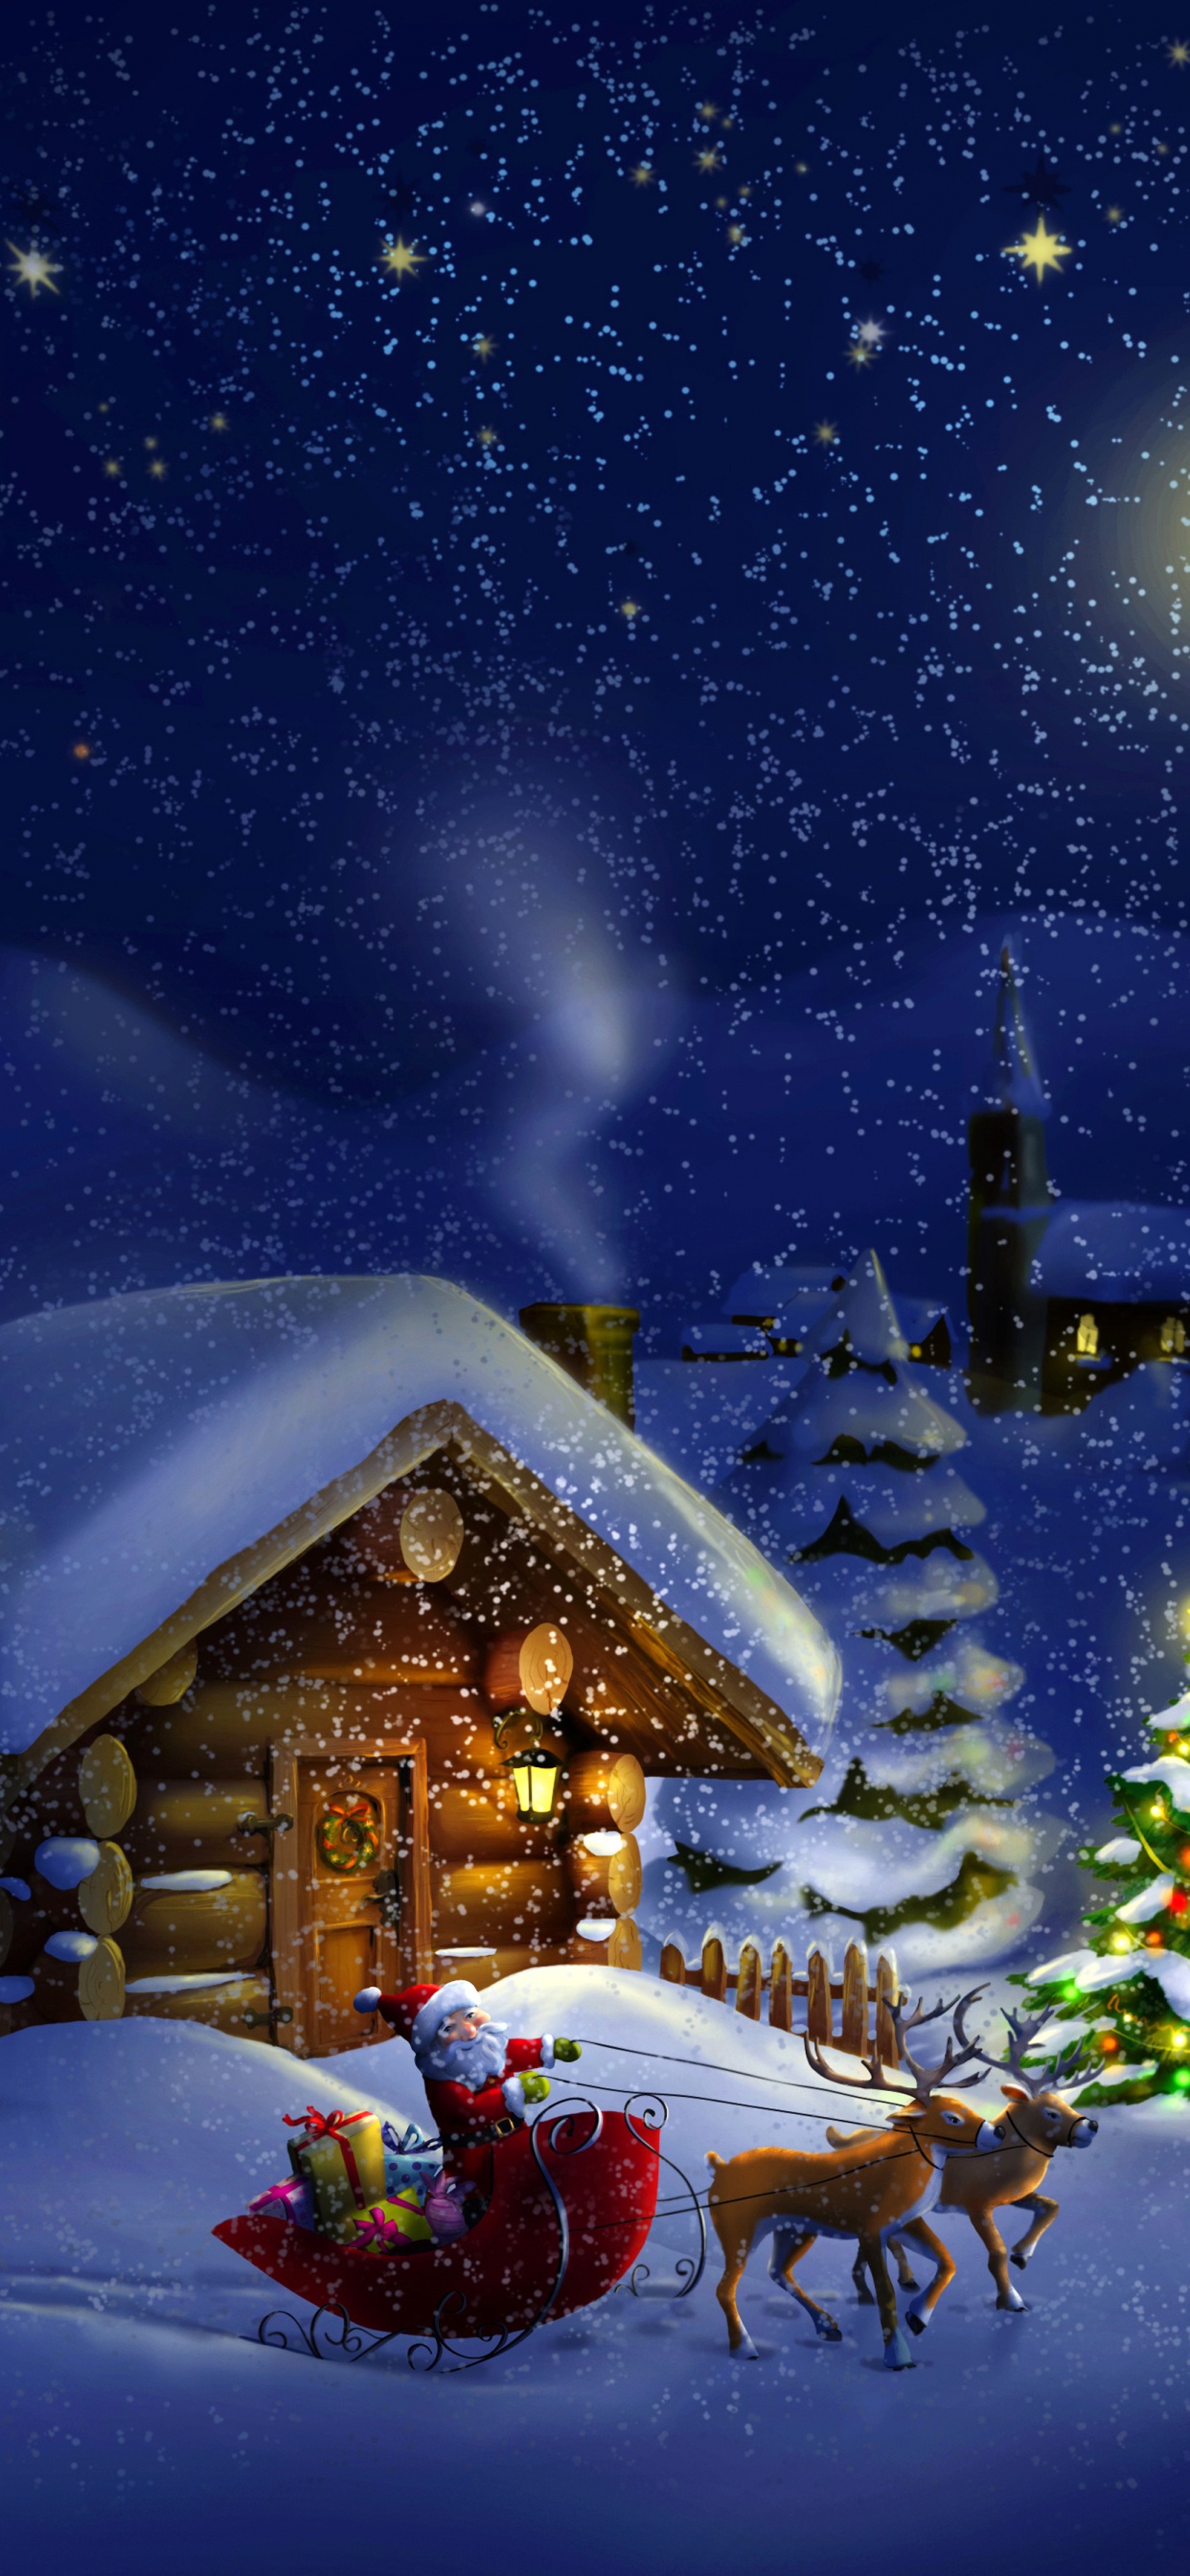 Weihnachten, Weihnachtsmann, Winter, Schnee, Nacht. Wallpaper in 1242x2688 Resolution